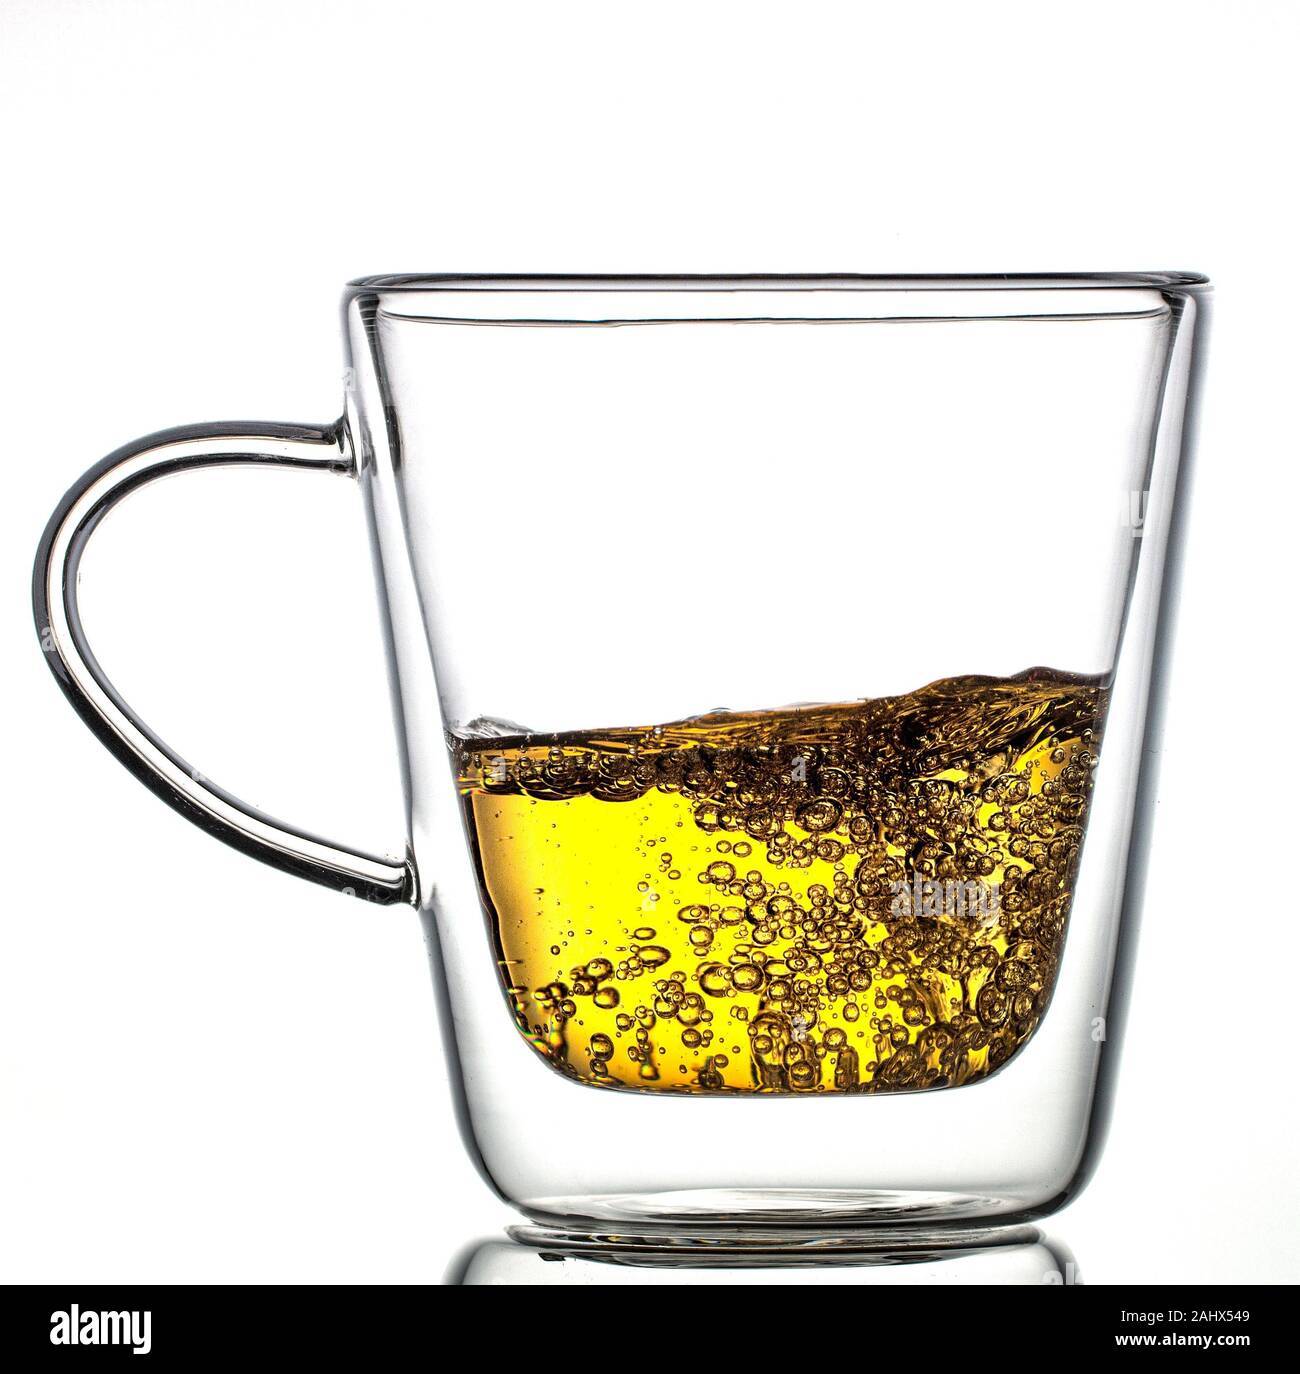 Glas transparent Thermoskanne Tasse mit Kaffee auf einem weißen Hintergrund  Stockfotografie - Alamy